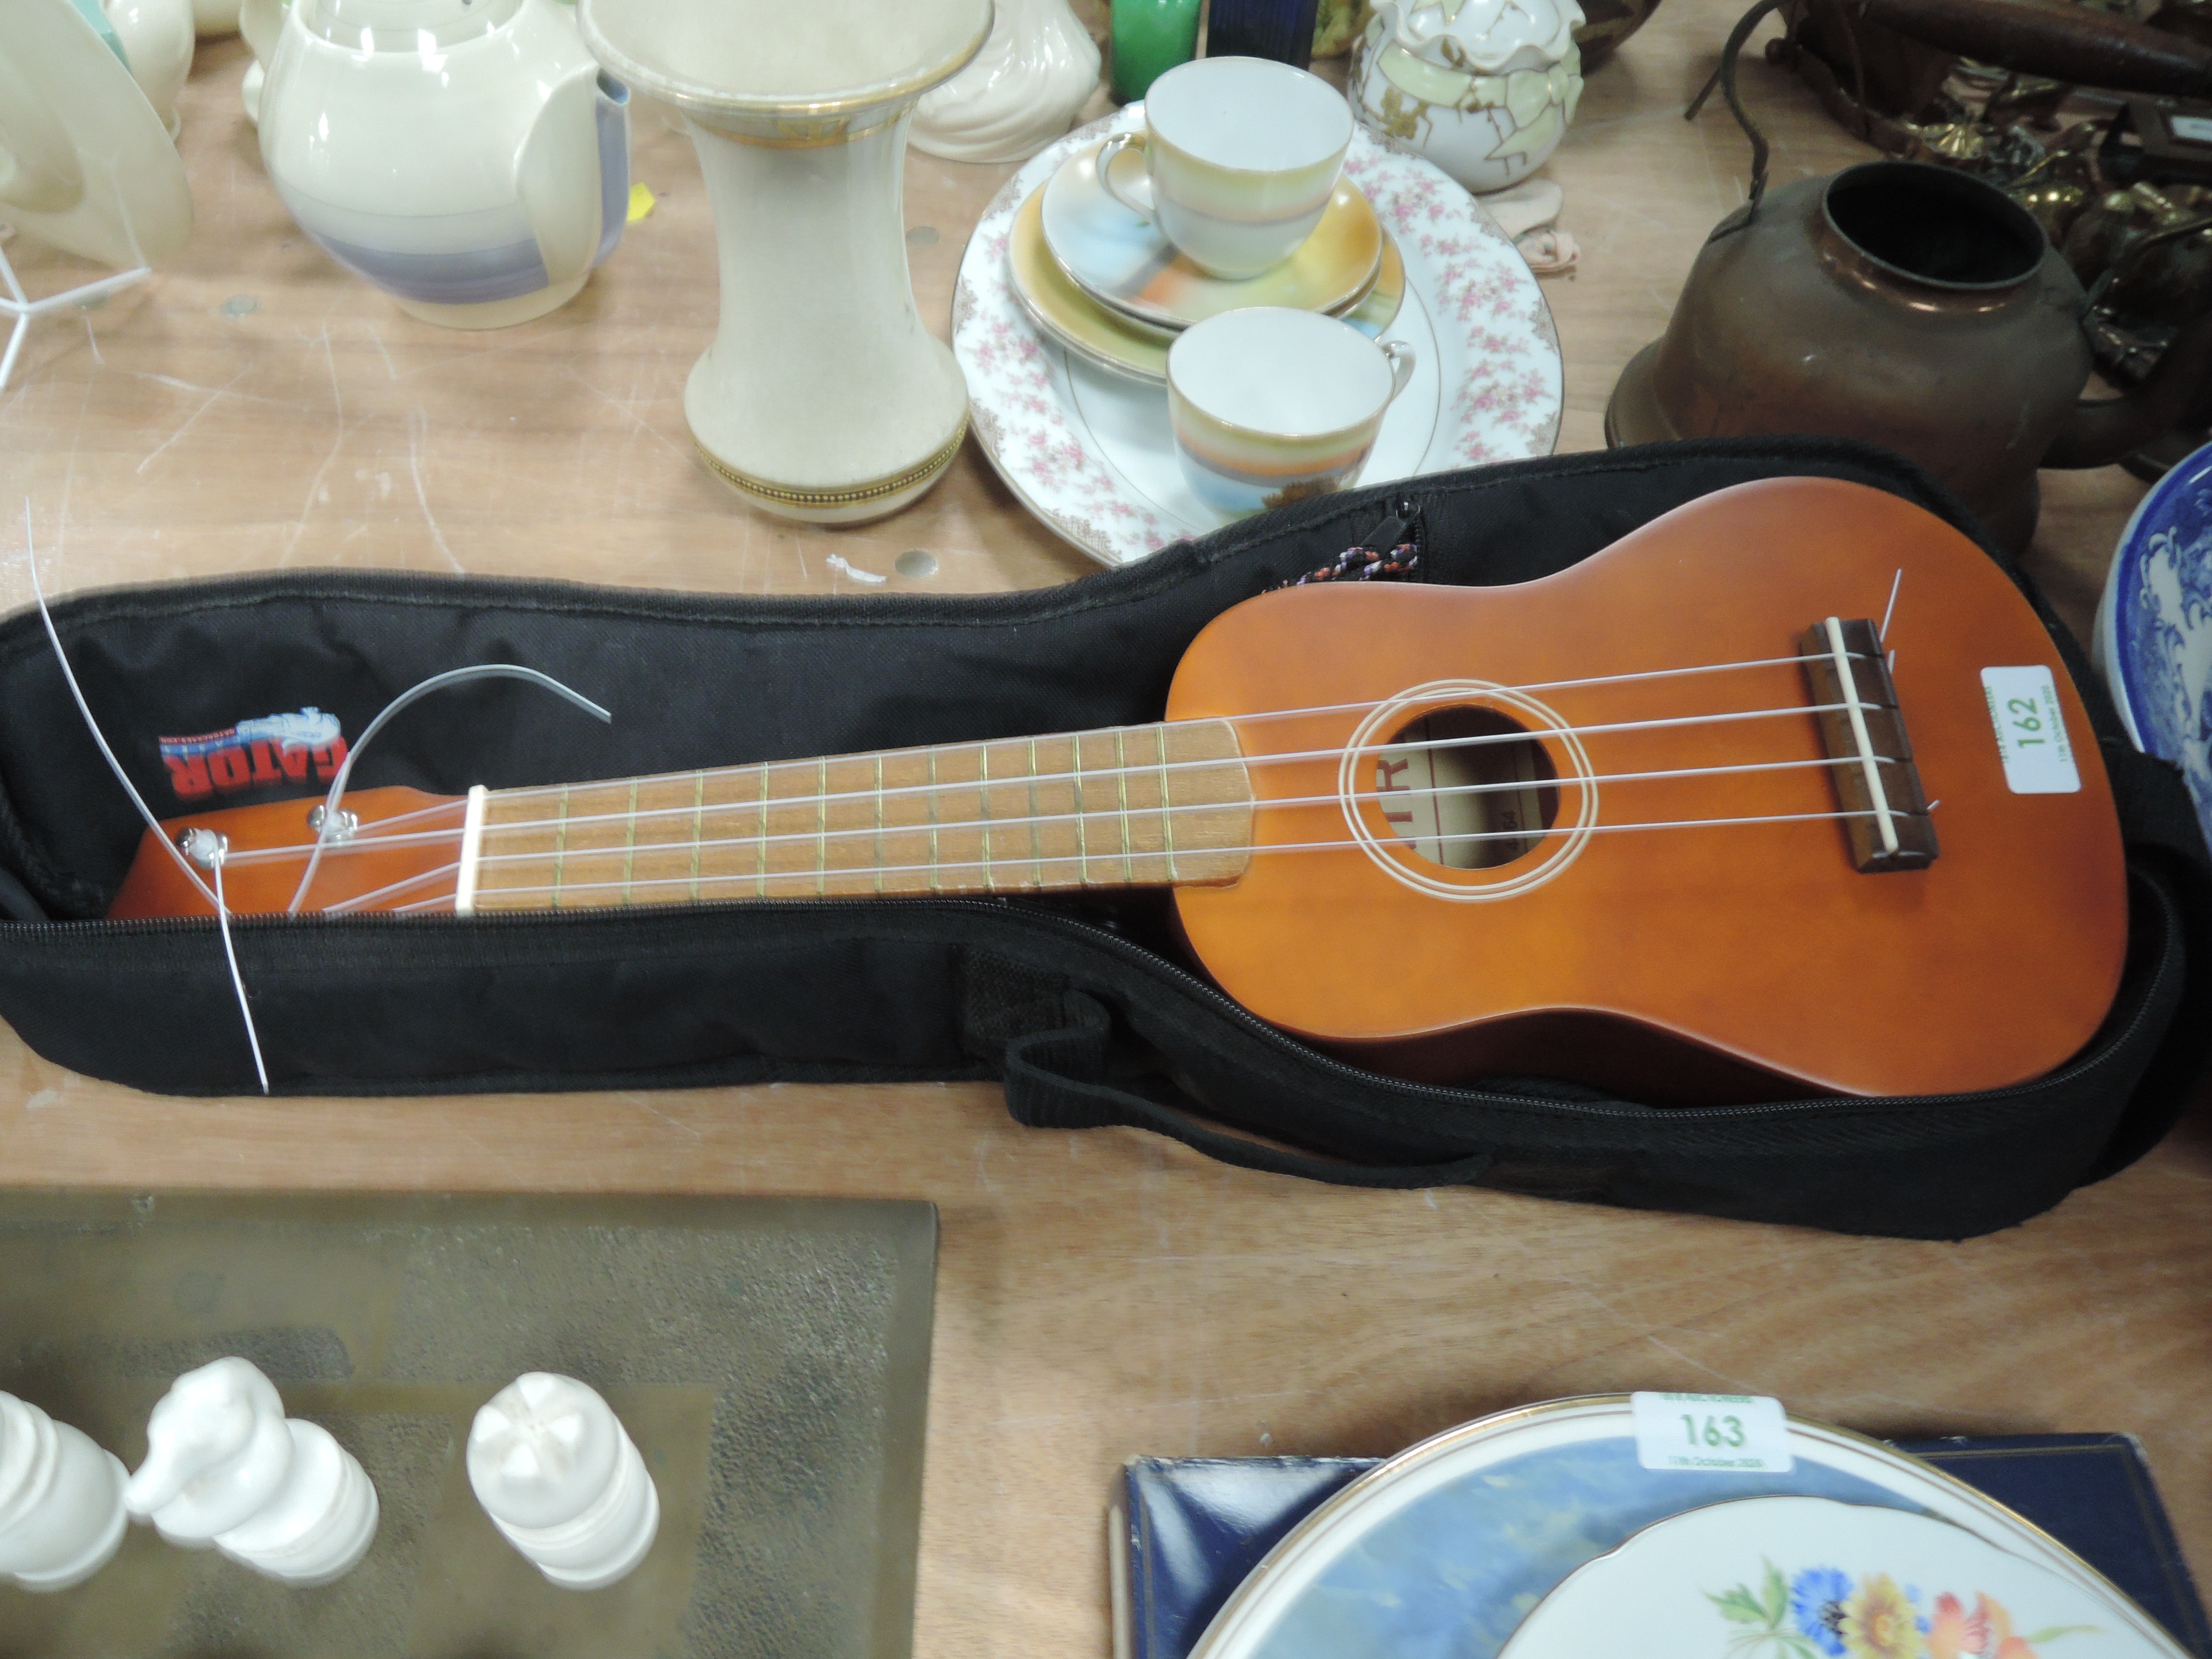 A Chantry ukulele and case.